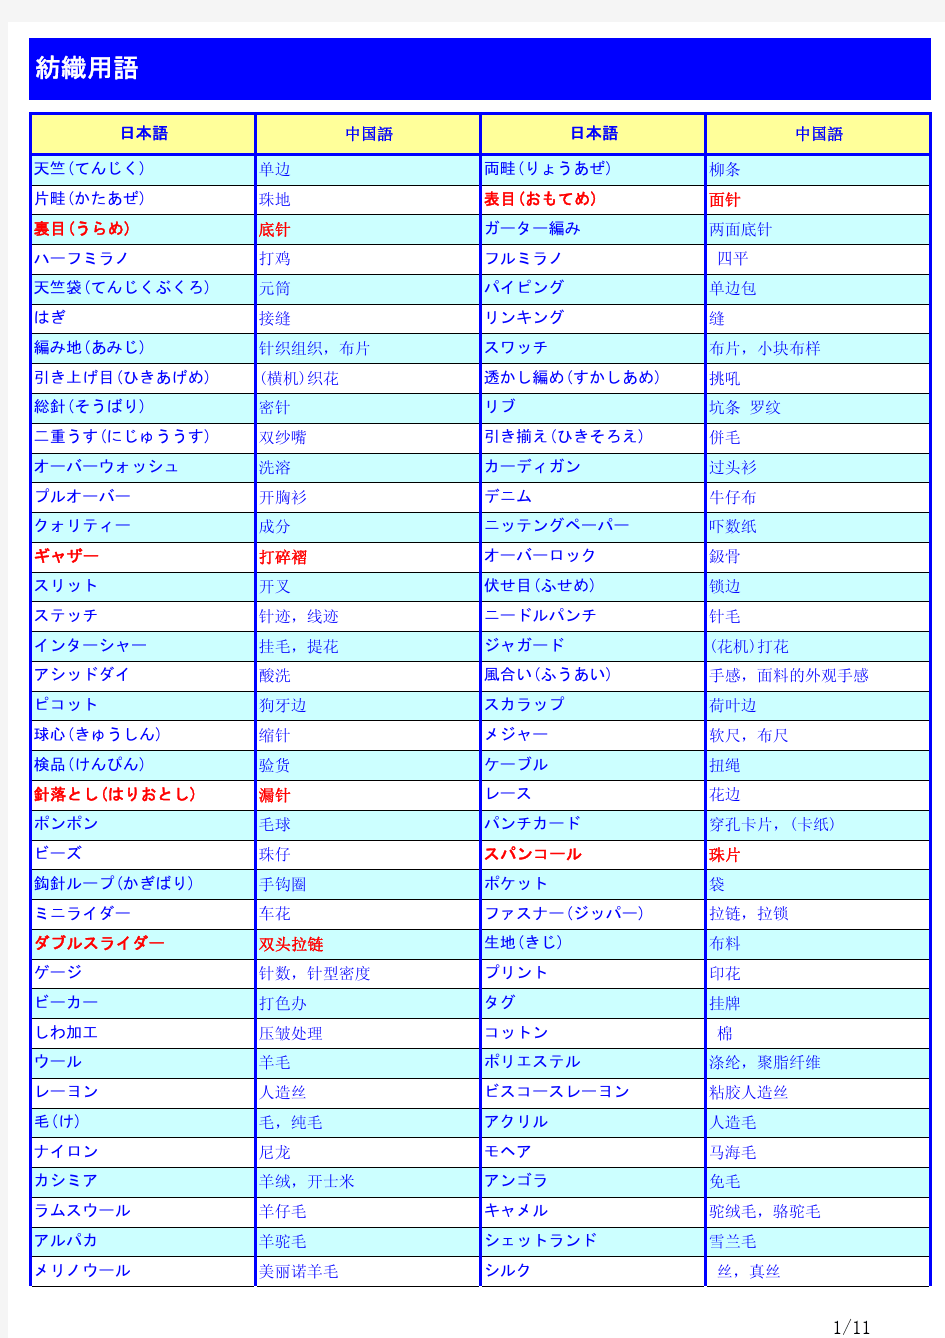 中日纺织用语一览表